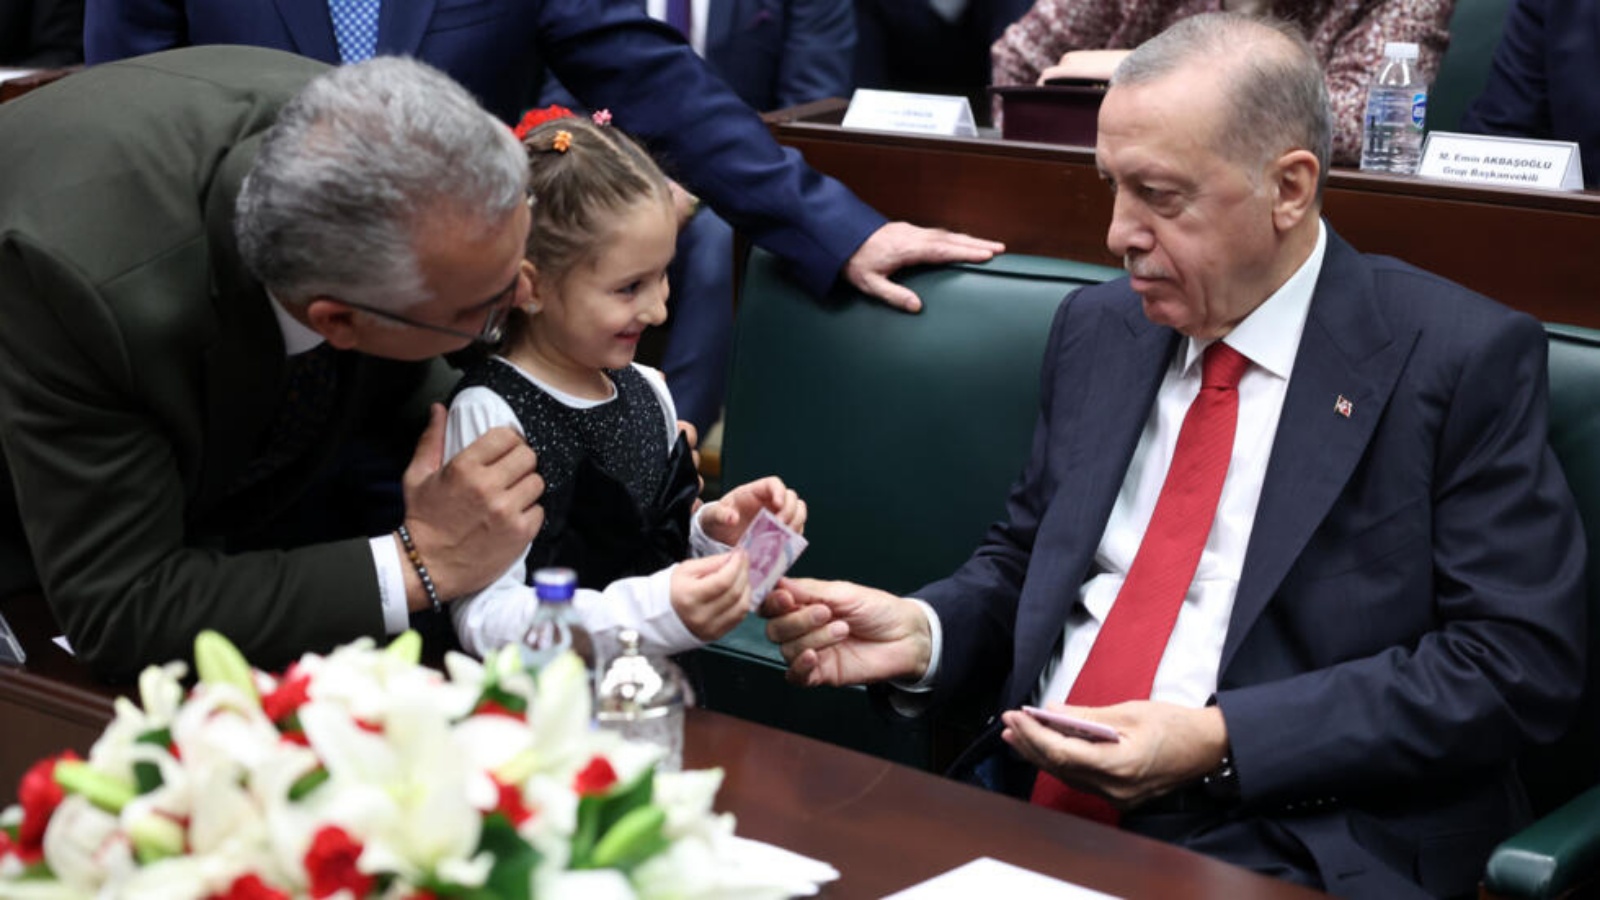 الرئيس التركي ورئيس حزب العدالة والتنمية رجب طيب أردوغان يعطي المال لفتاة جاءت إليه في اجتماع حزبه في البرلمان التركي في أنقرة في 15 نوفمبر 2023 